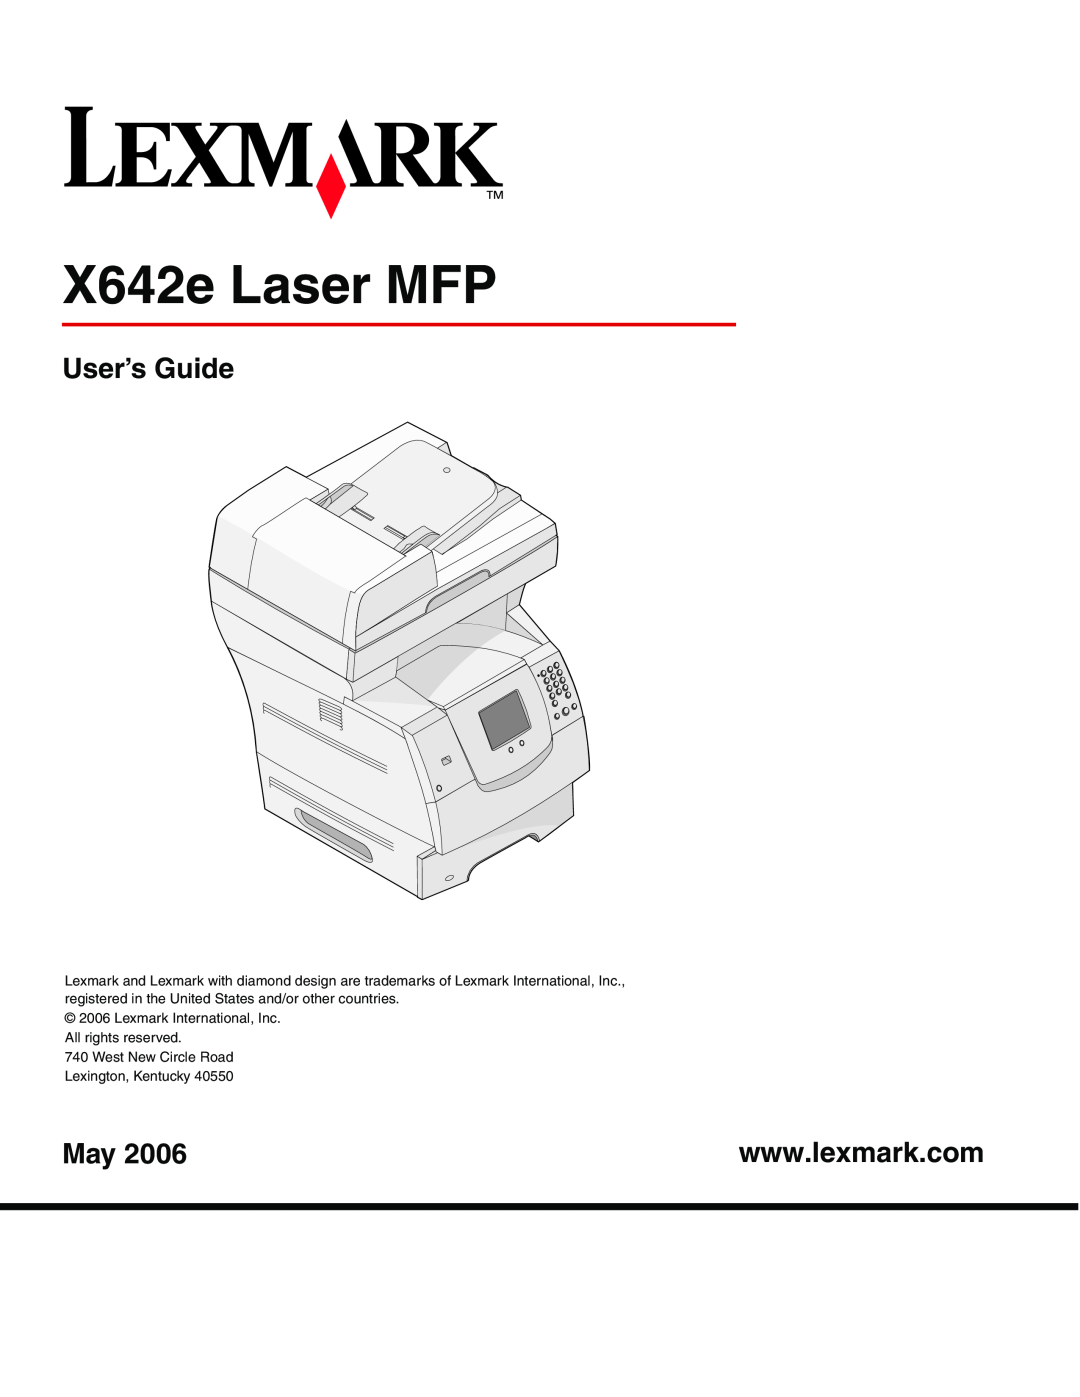 Lexmark manual X642e Laser MFP, User’s Guide 